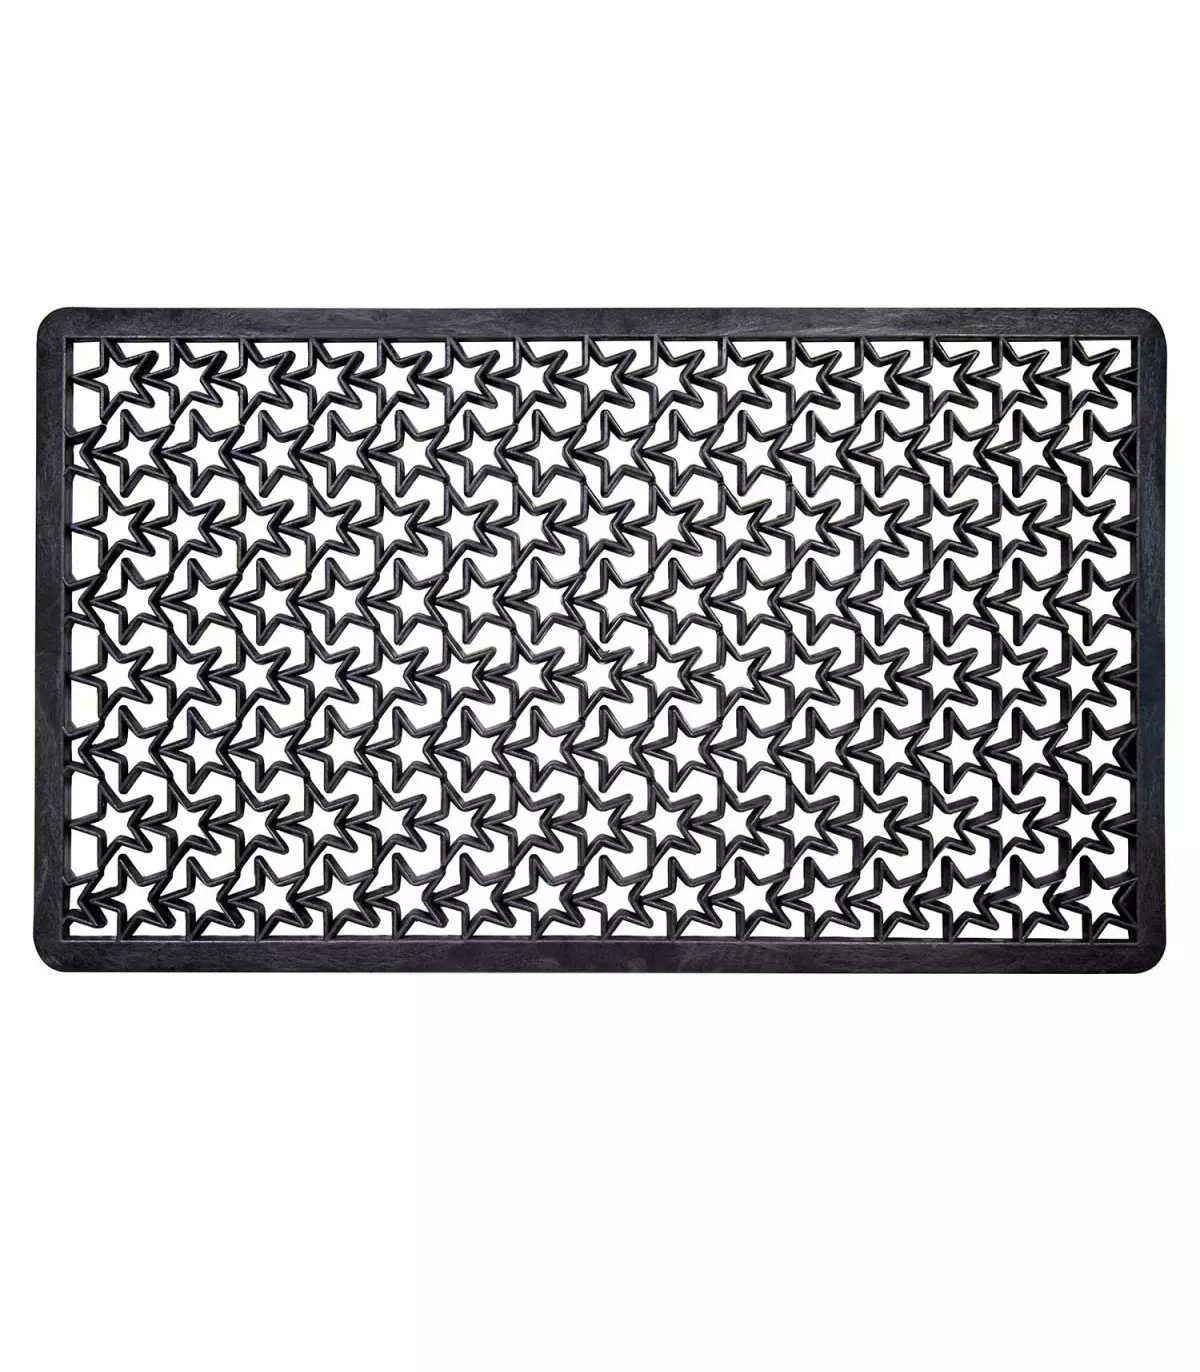 Outdoor perforated rubber doormat